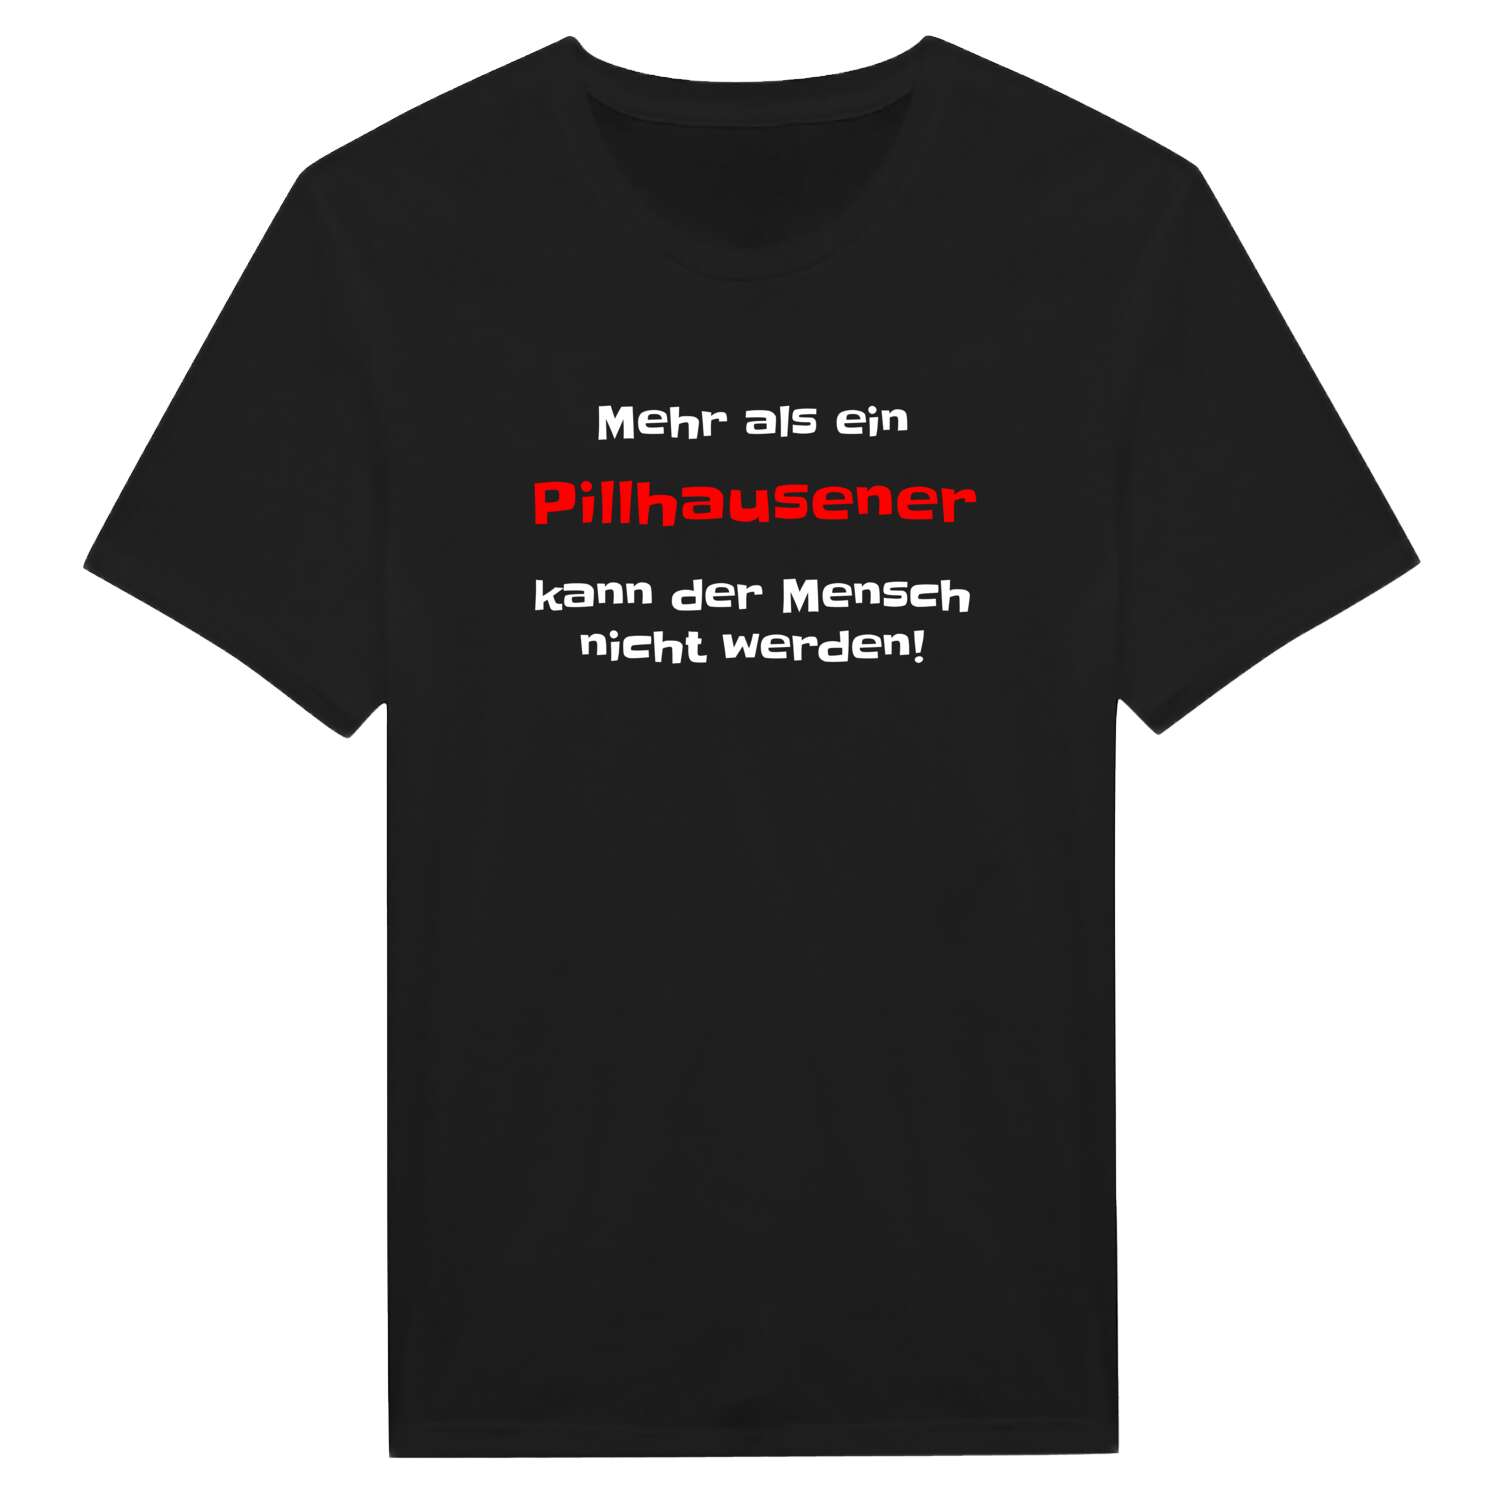 Pillhausen T-Shirt »Mehr als ein«